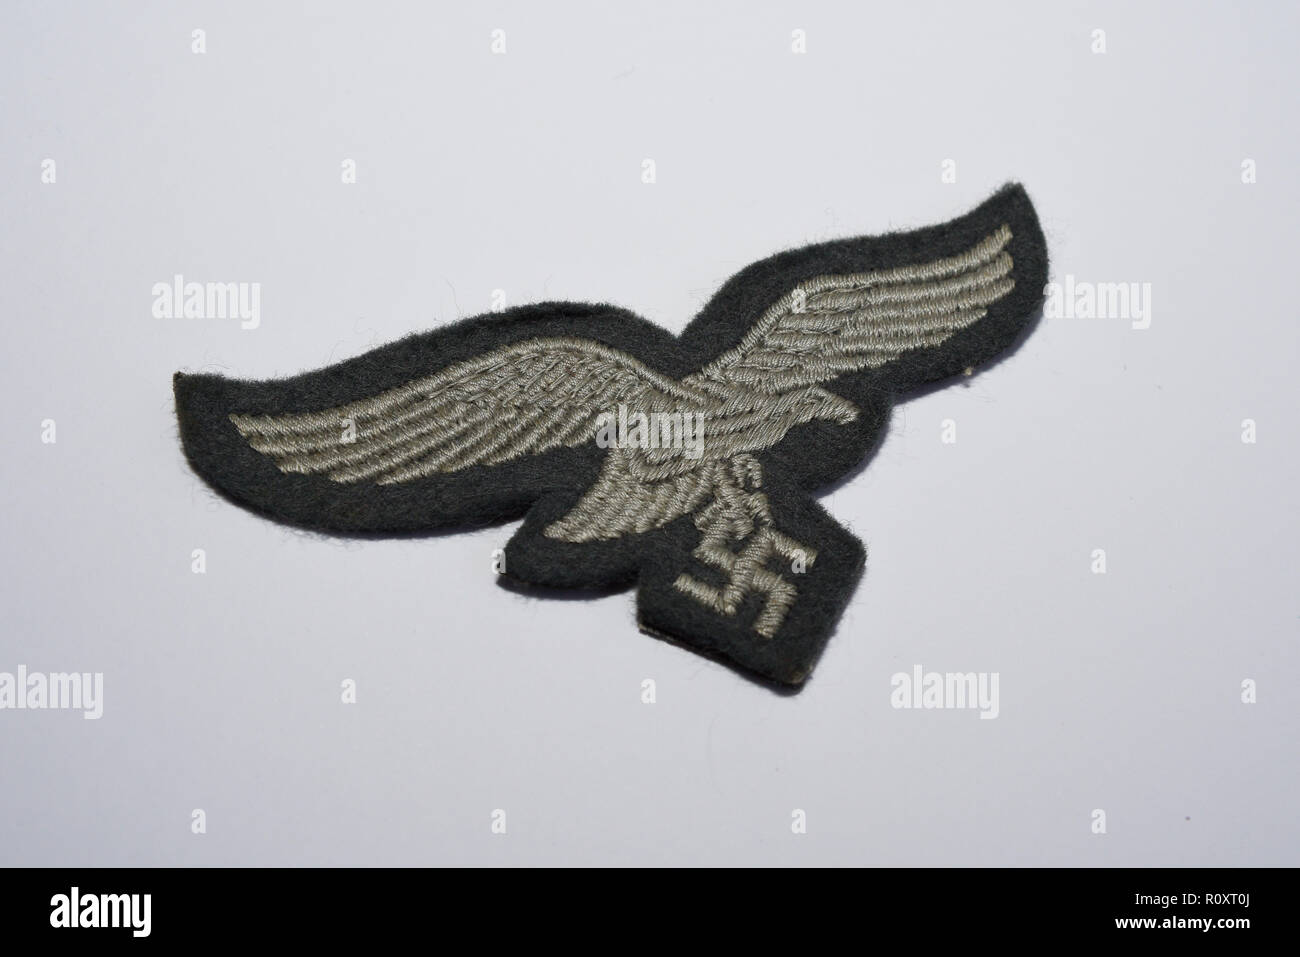 Aquila tedesca della Luftwaffe e stemma in tessuto svastica della seconda guerra mondiale. Emblema. Seconda guerra mondiale. Isolato su sfondo bianco Foto Stock